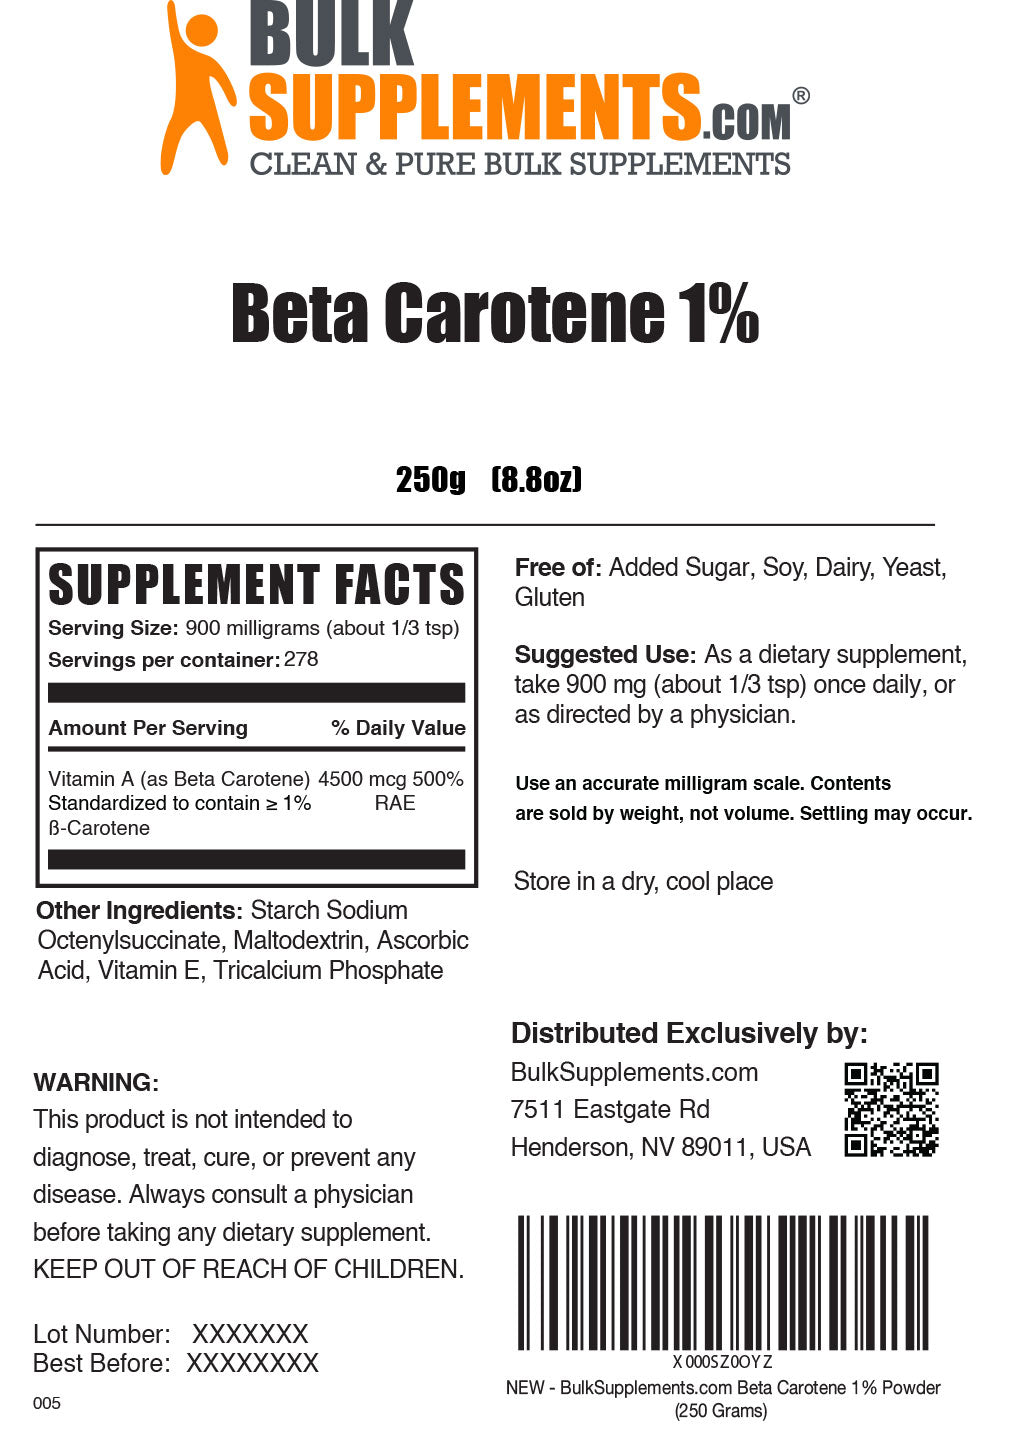 Beta carotene 1% in polvere